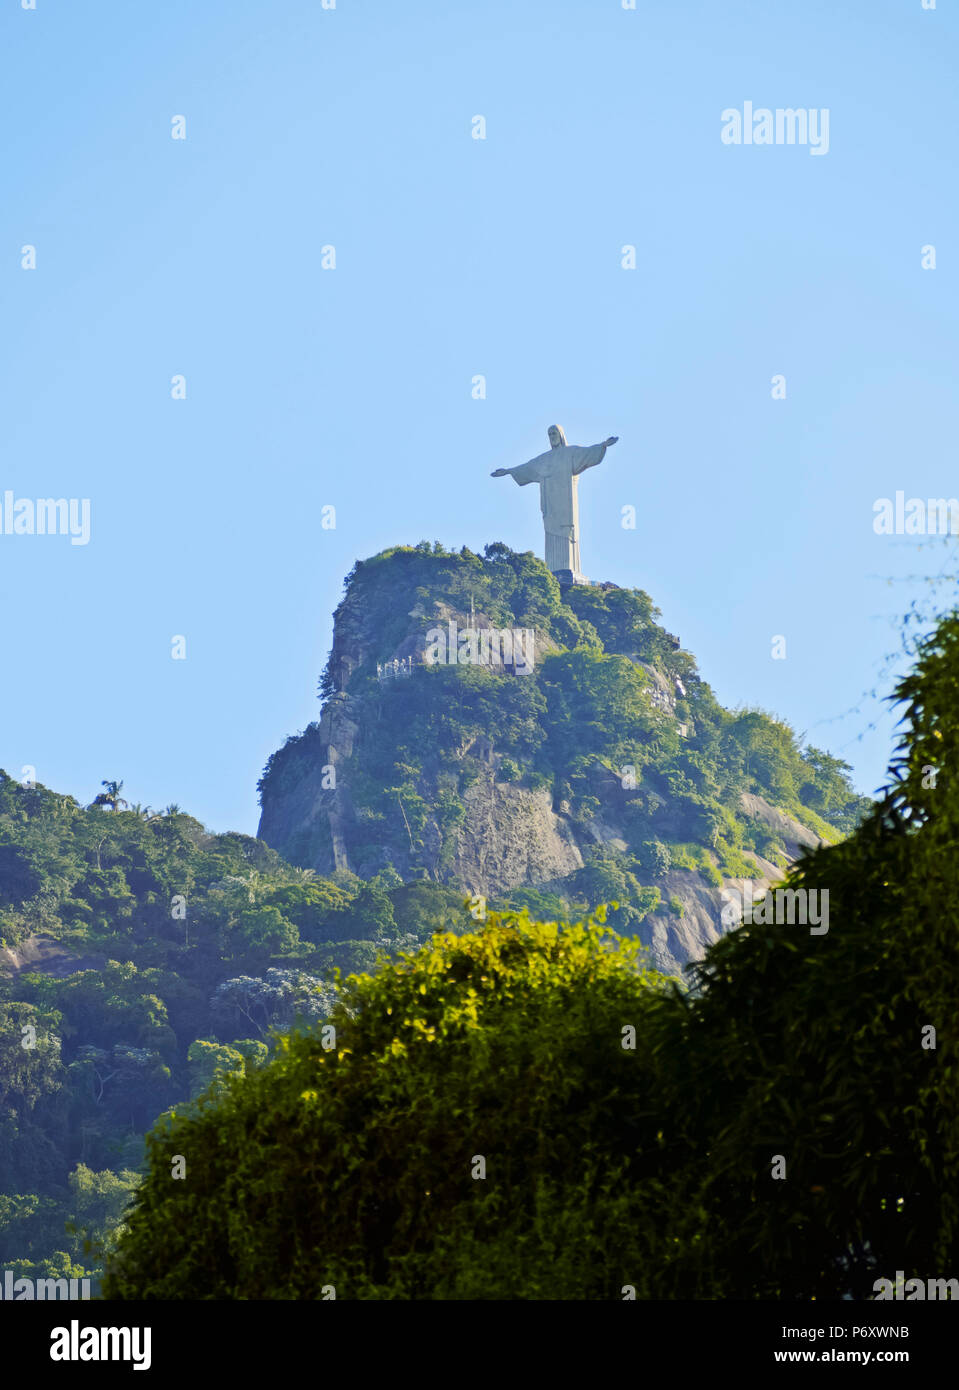 Brésil, Rio de Janeiro, le Christ Rédempteur au sommet du Corcovado vue depuis le quartier de Cosme Velho. Banque D'Images